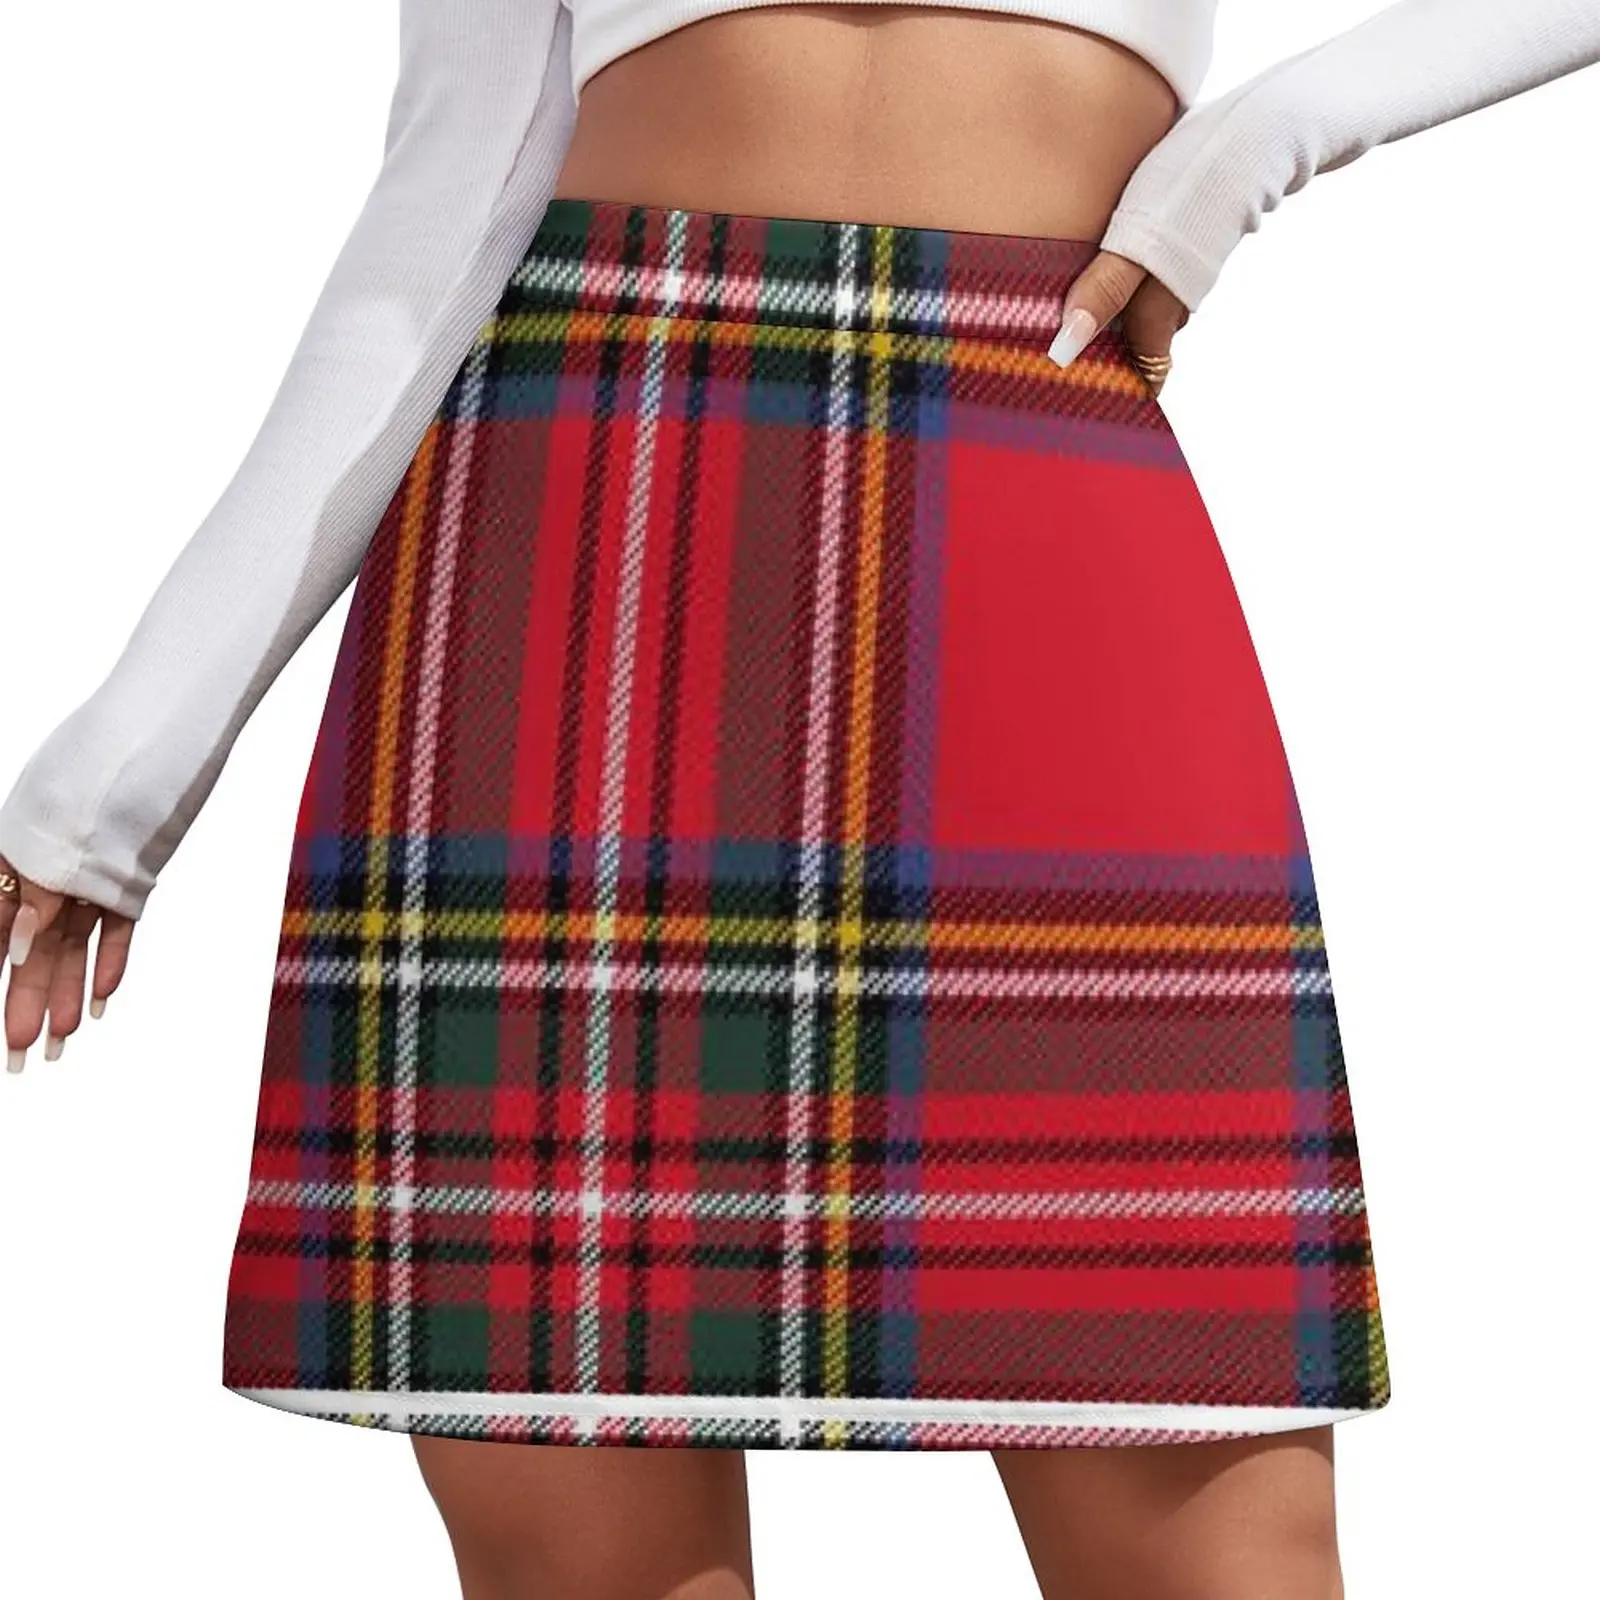 

Tartan Texture Mini Skirt Woman skirts festival outfit women